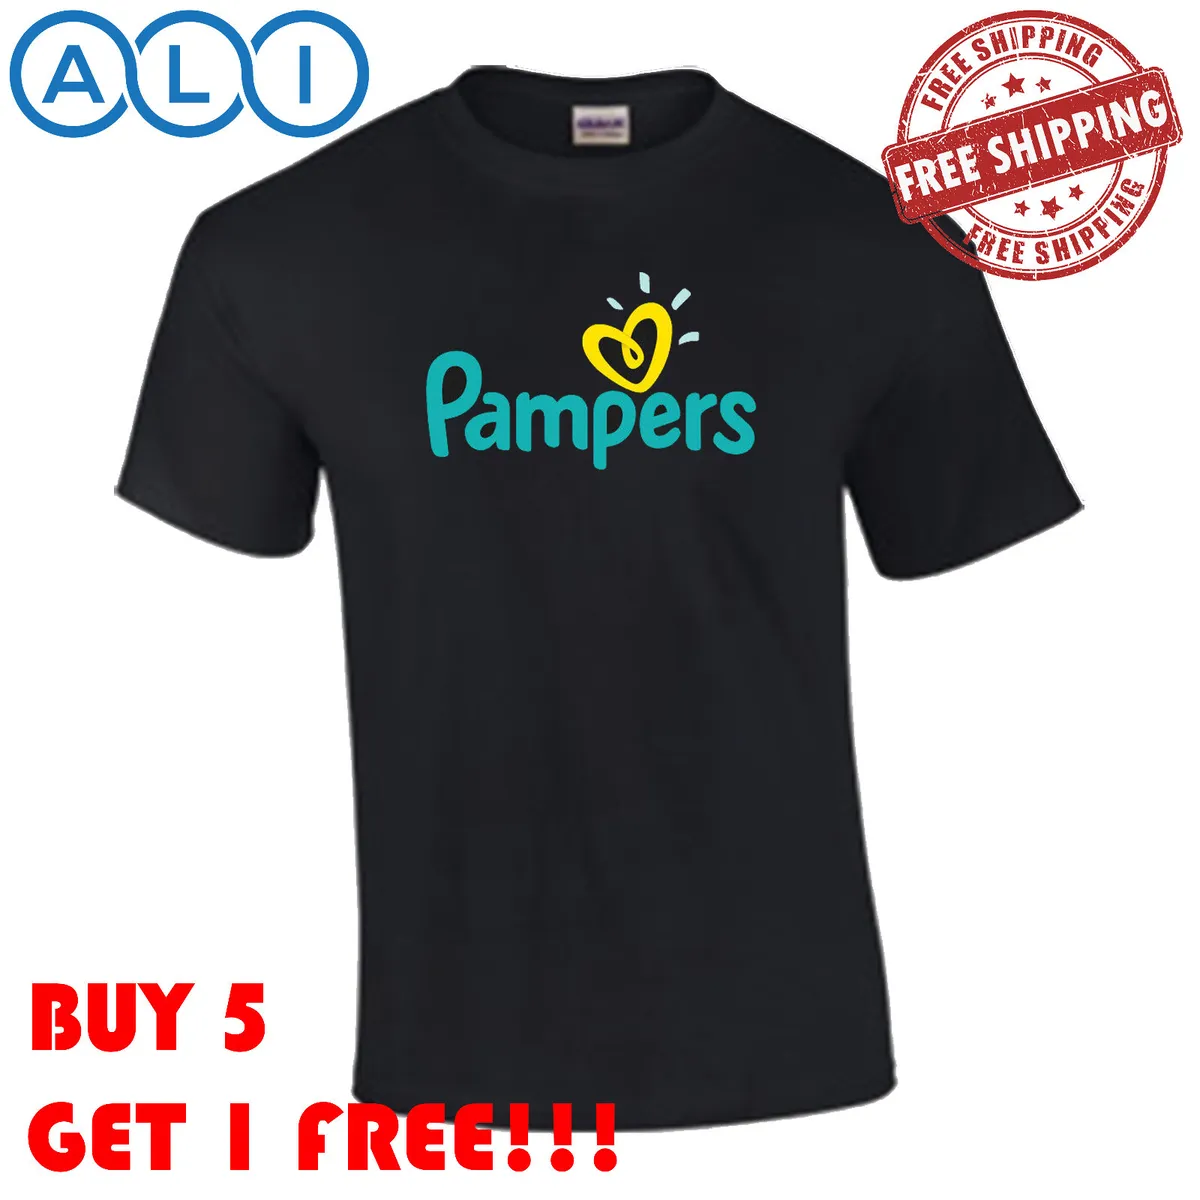 gratis t shirt pampers